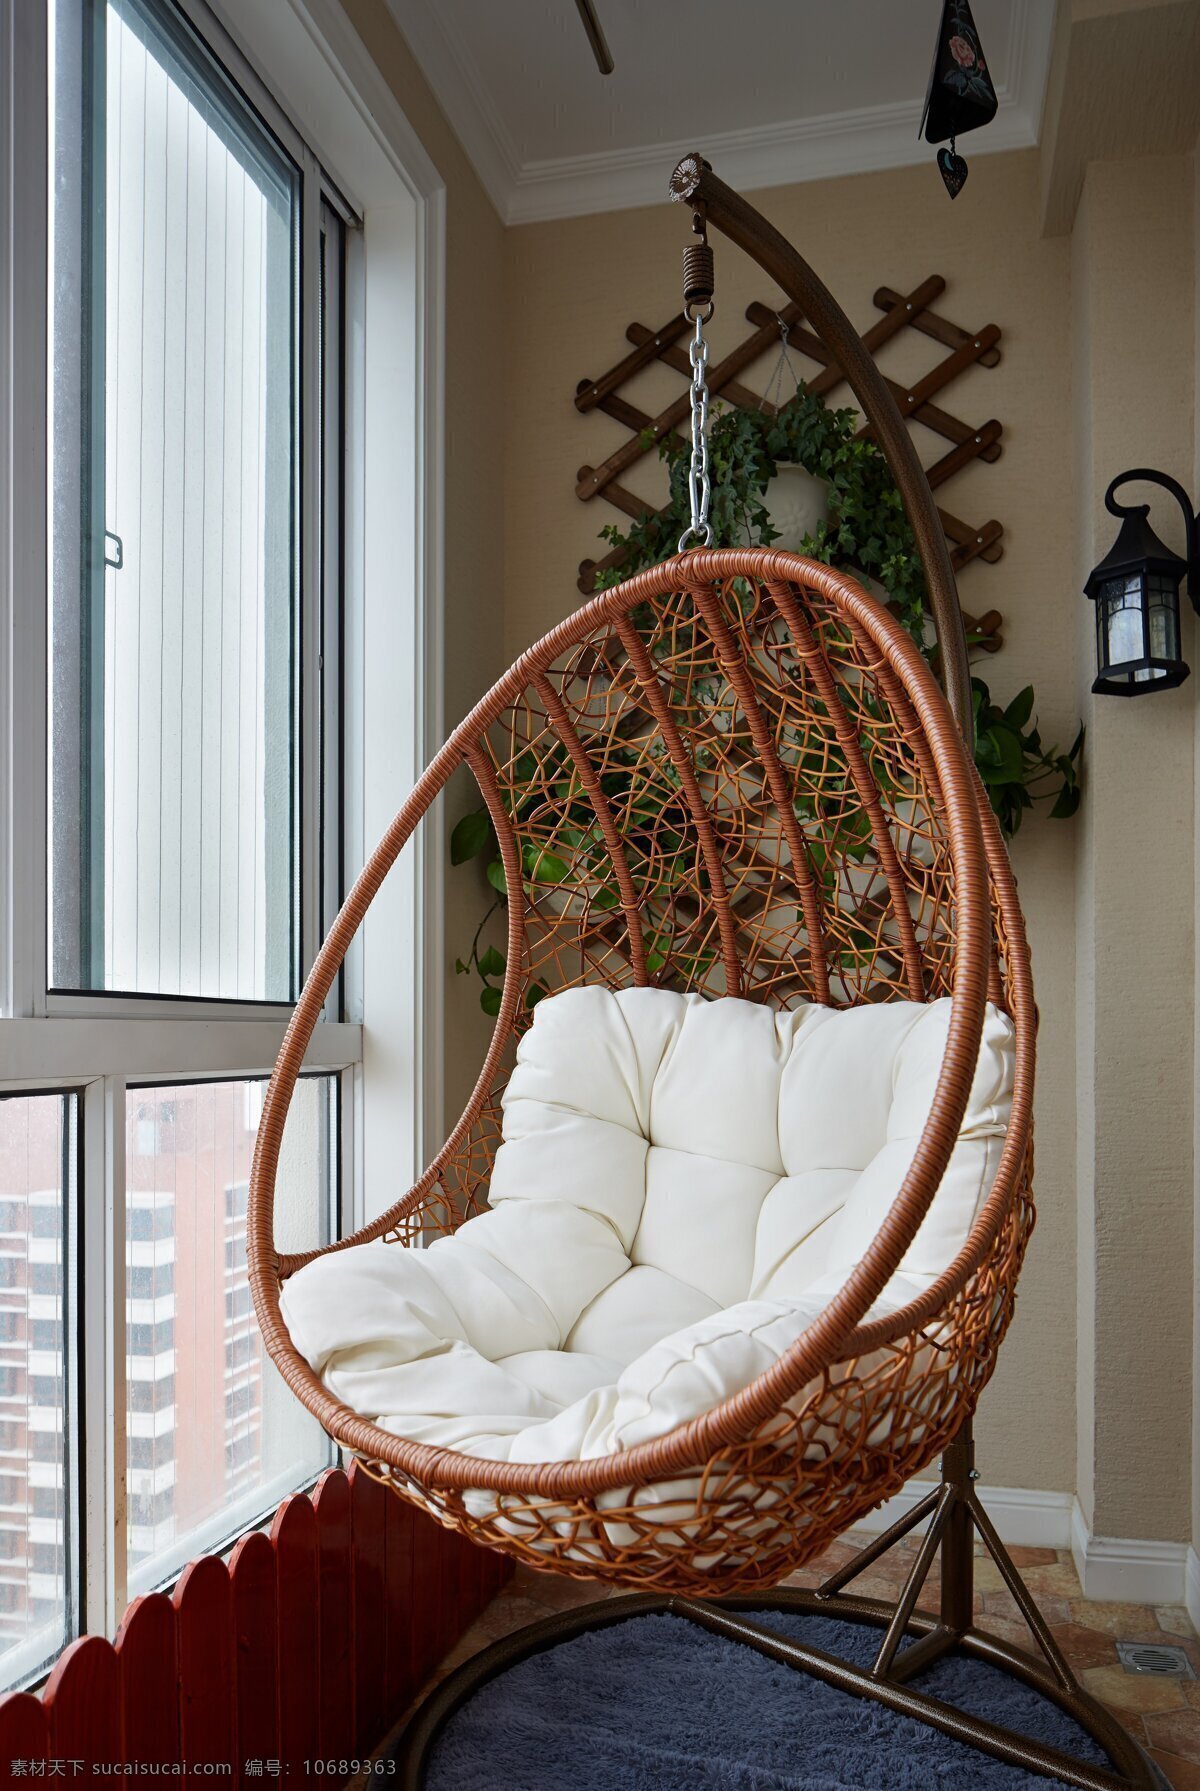 椭圆形 摇椅 装修 效果图 创意 环境设计 家居 生活 家具 客厅 时尚 室内 室内设计 家居生活 窗户 摇篮椅